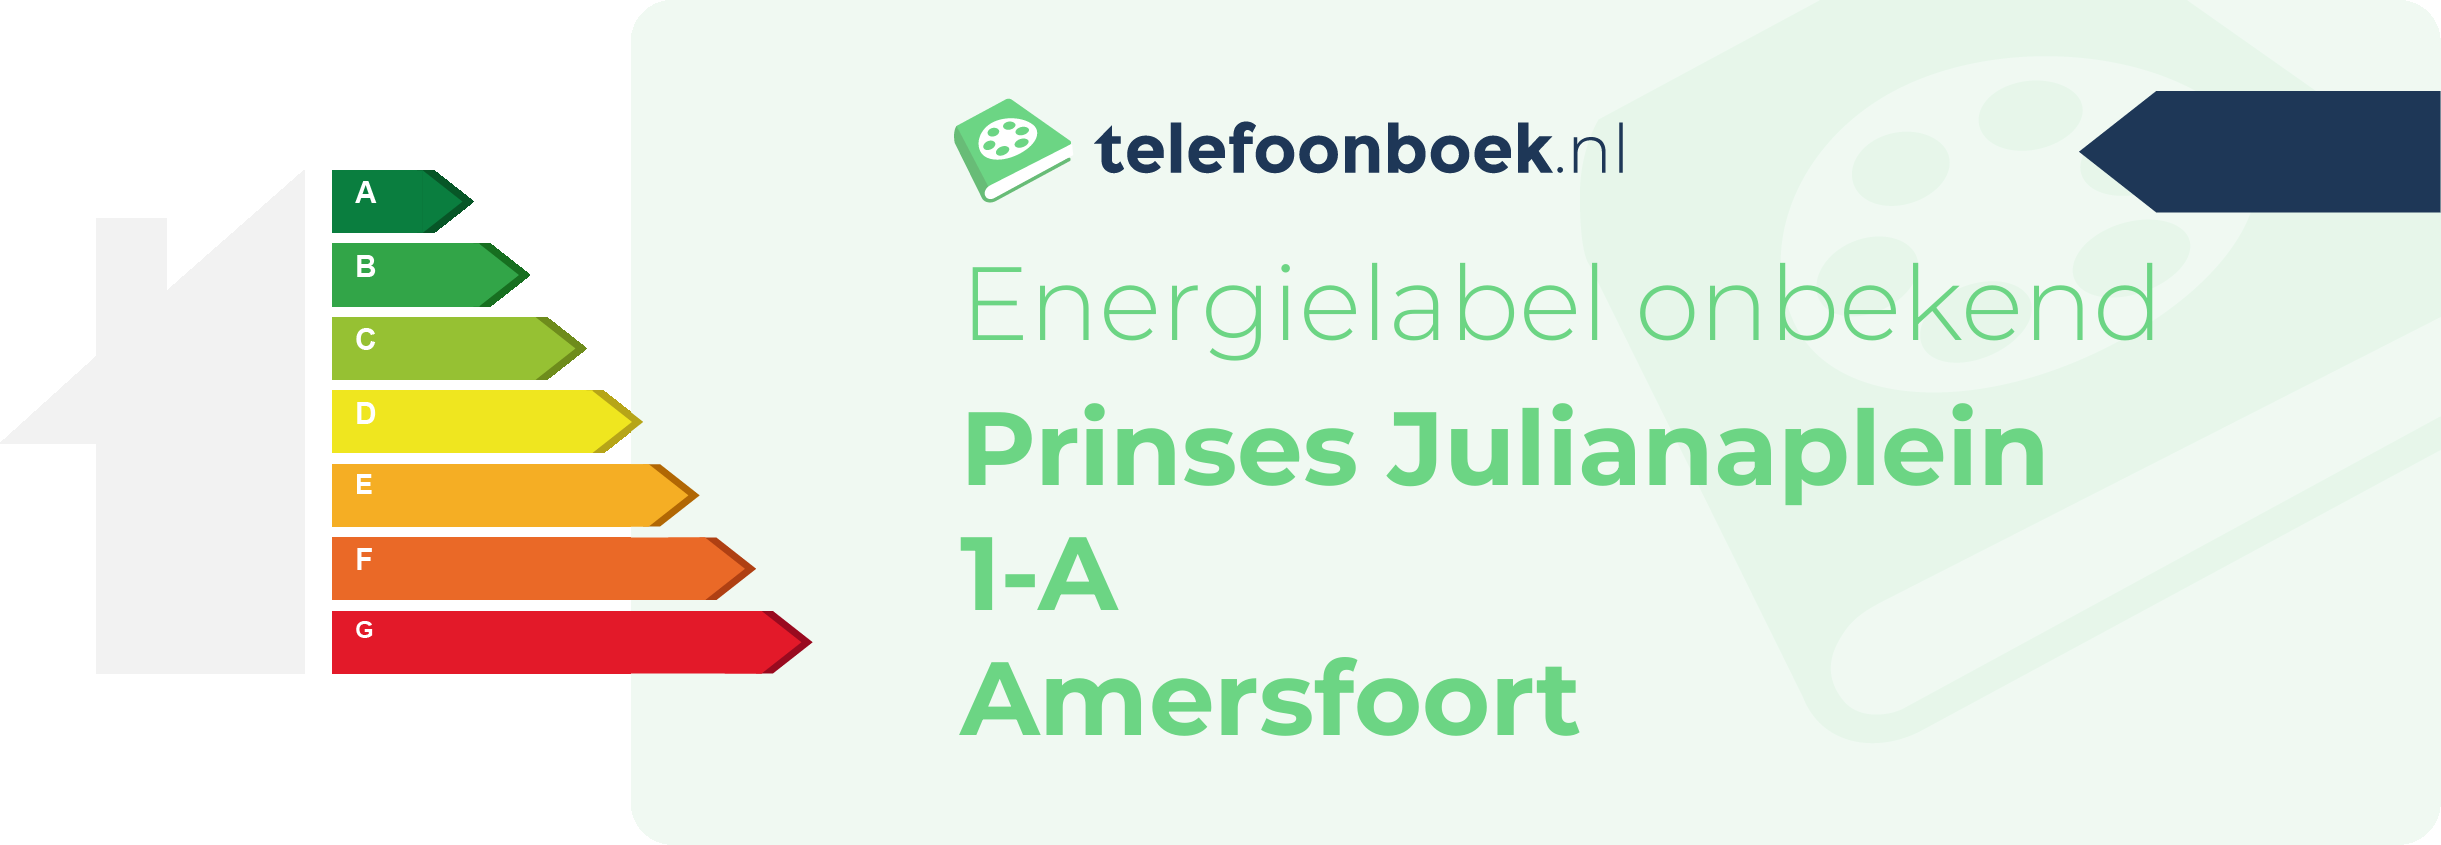 Energielabel Prinses Julianaplein 1-A Amersfoort